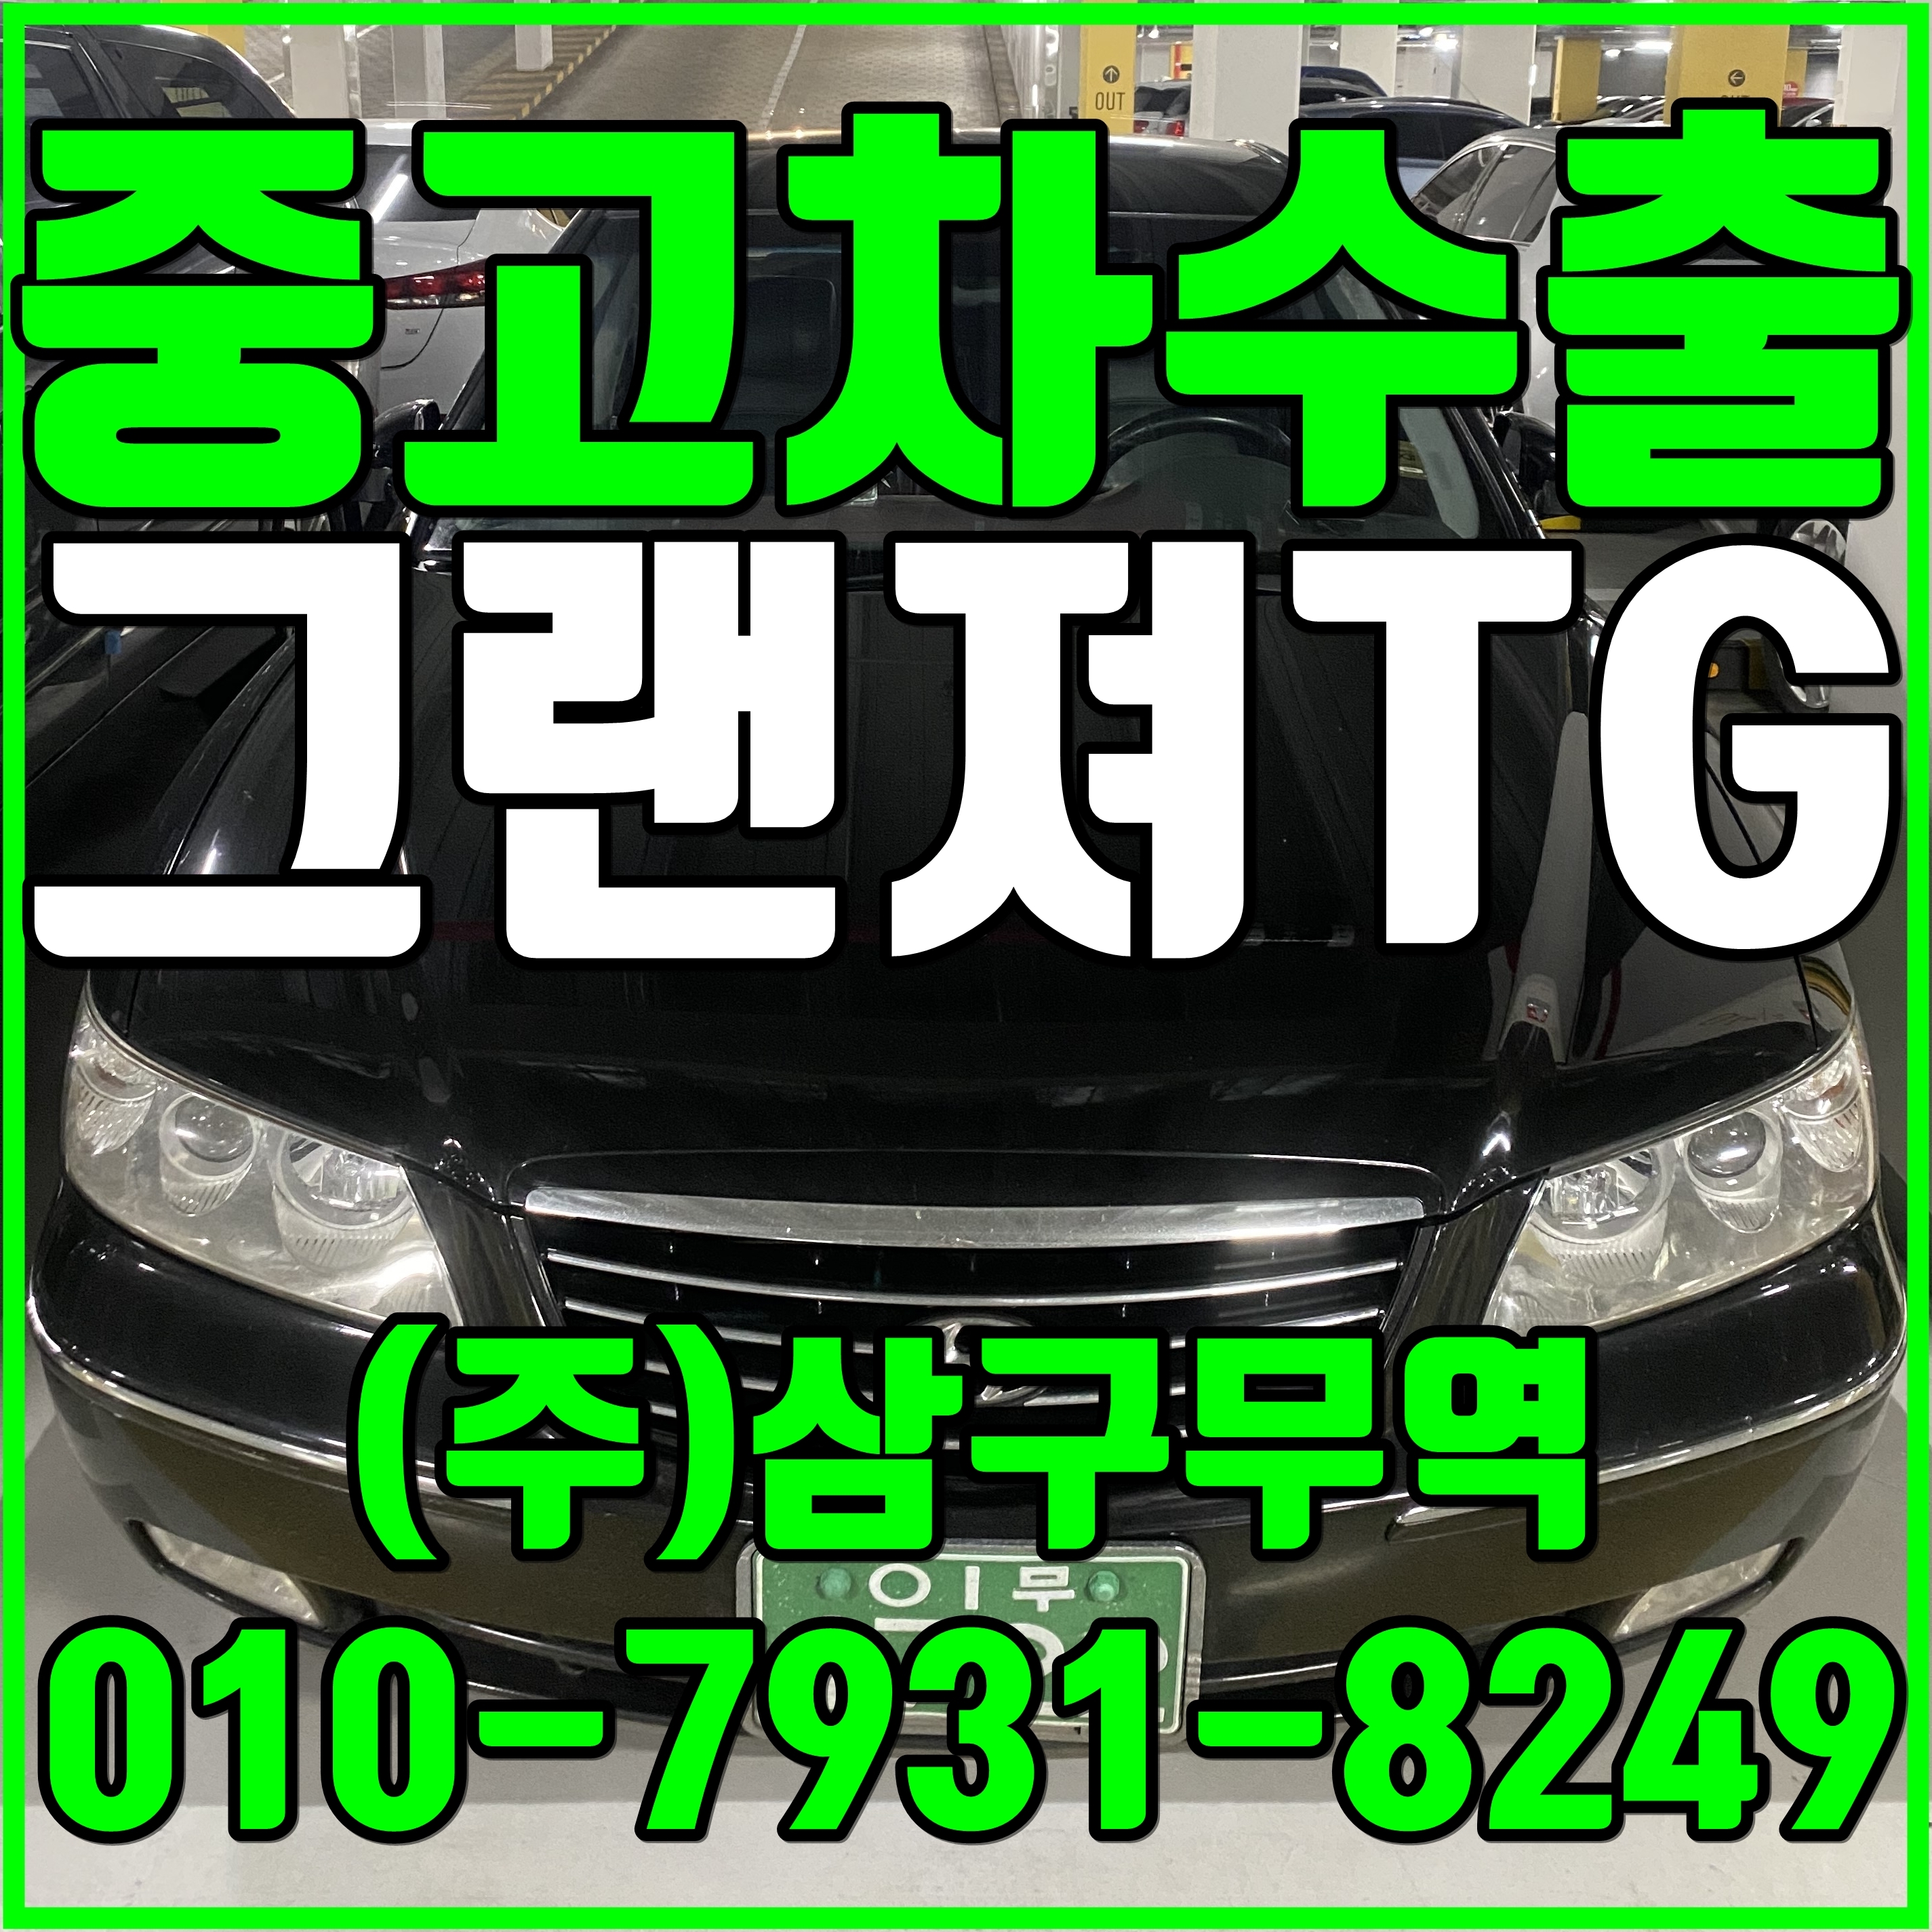 중고차수출 경기김포 그랜져TG 2.7 수출매입후기